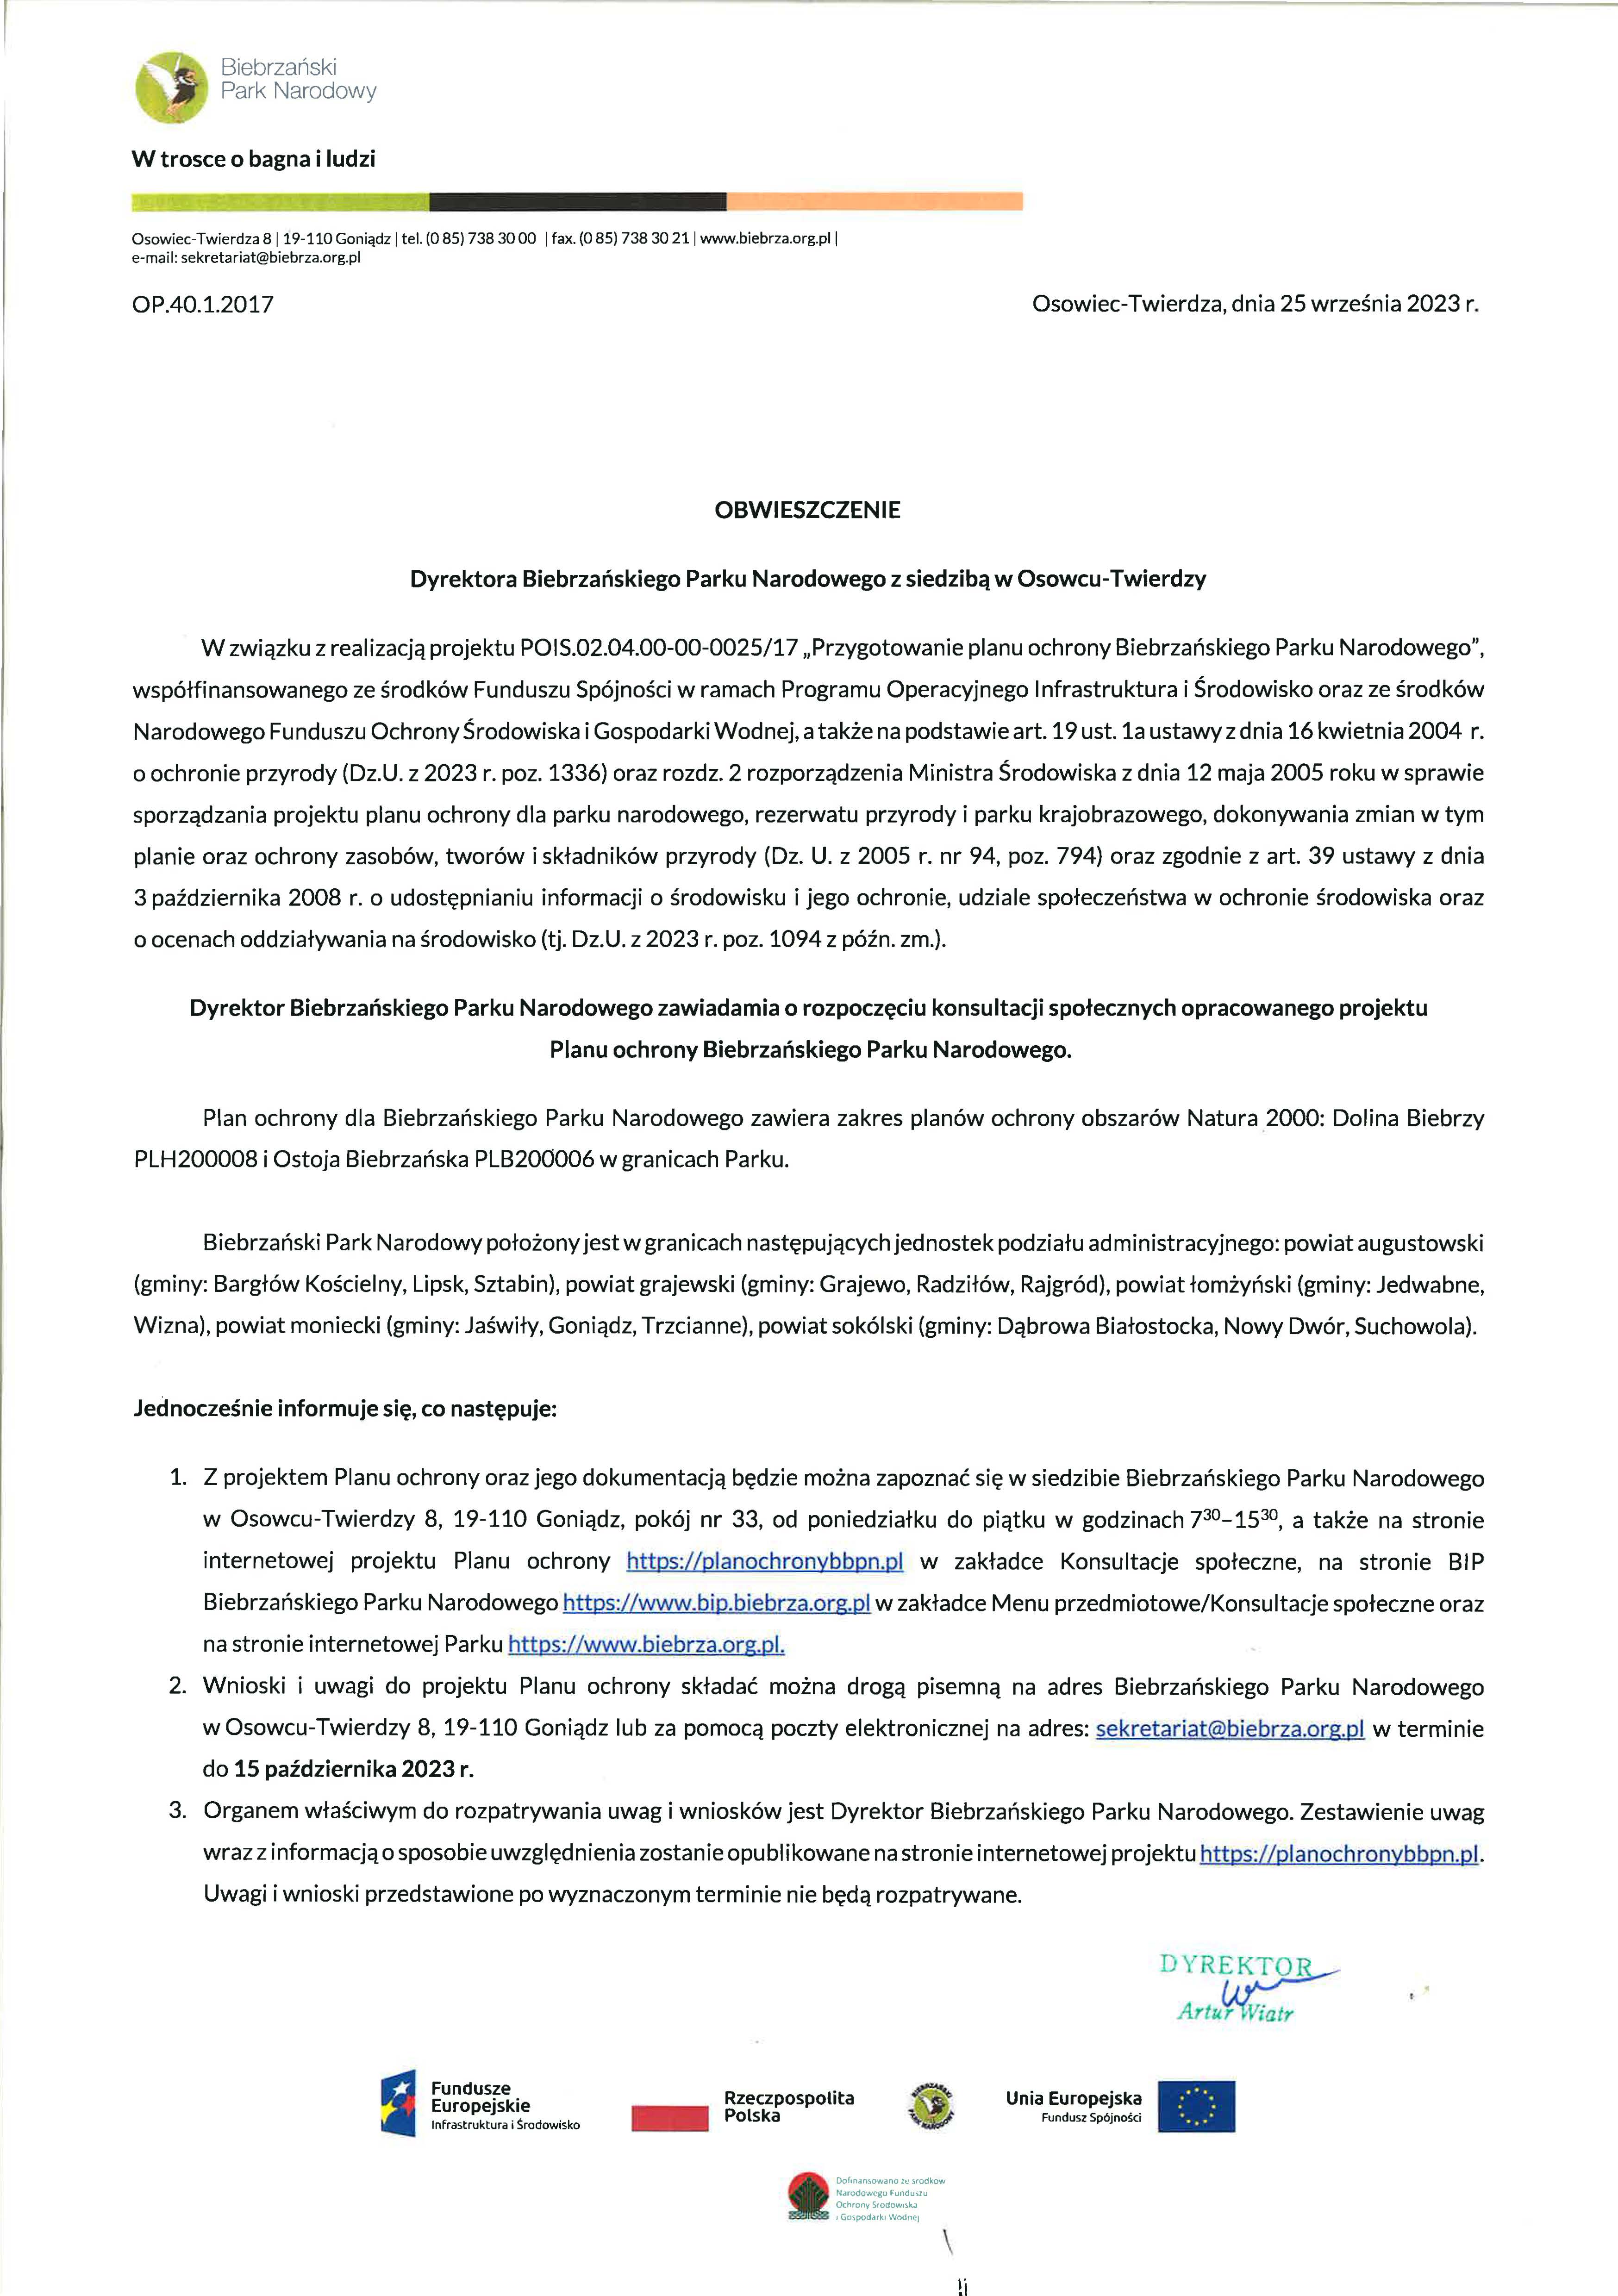 Obwieszczenie Dyrektora BbPN dot. pojektu "Przygotowanie planu ochrony Biebrzańskiego Parku Narodowego"